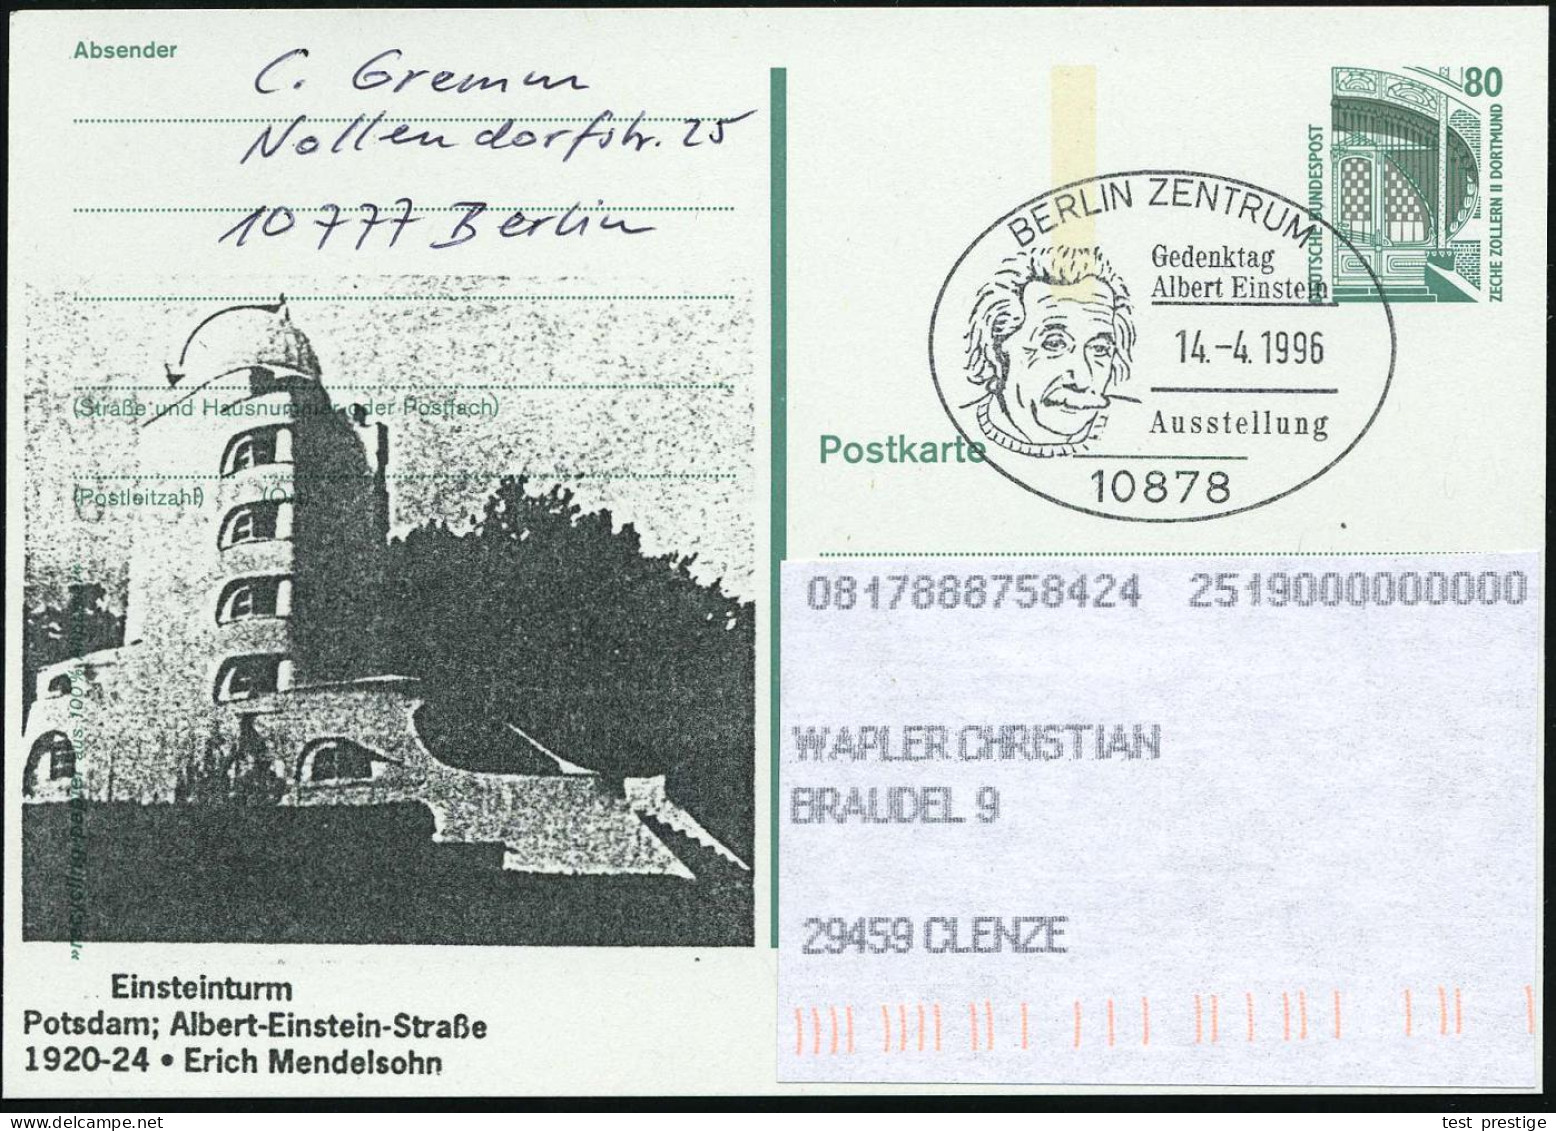 10878 BERLIN-ZENTRUM/ Gedenktag/ Albert Einstein/ Ausstellung 1996 (14.4.) SSt = Kopfbild Einstein Auf Amtl. P 80 Pf. Ze - Astronomy